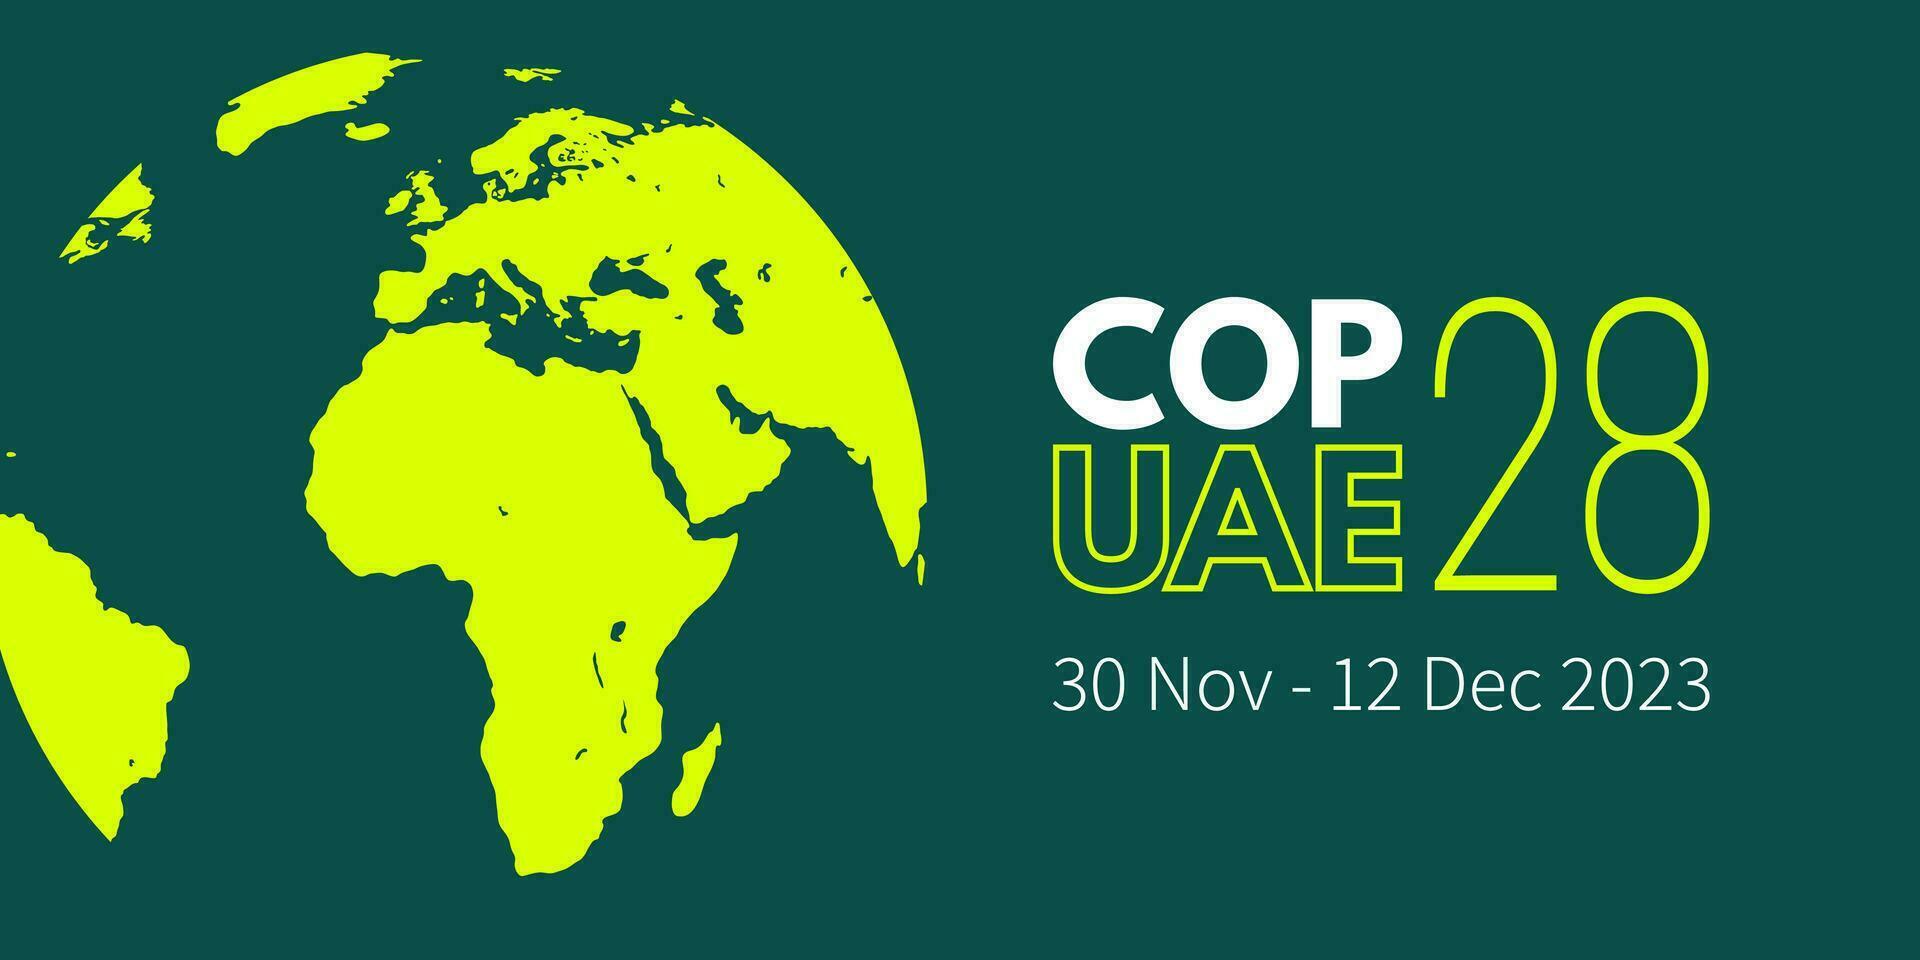 Hội nghị COP28 diễn ra tại Expo City Dubai, UAE, từ 30/11 đến 12/12/2023